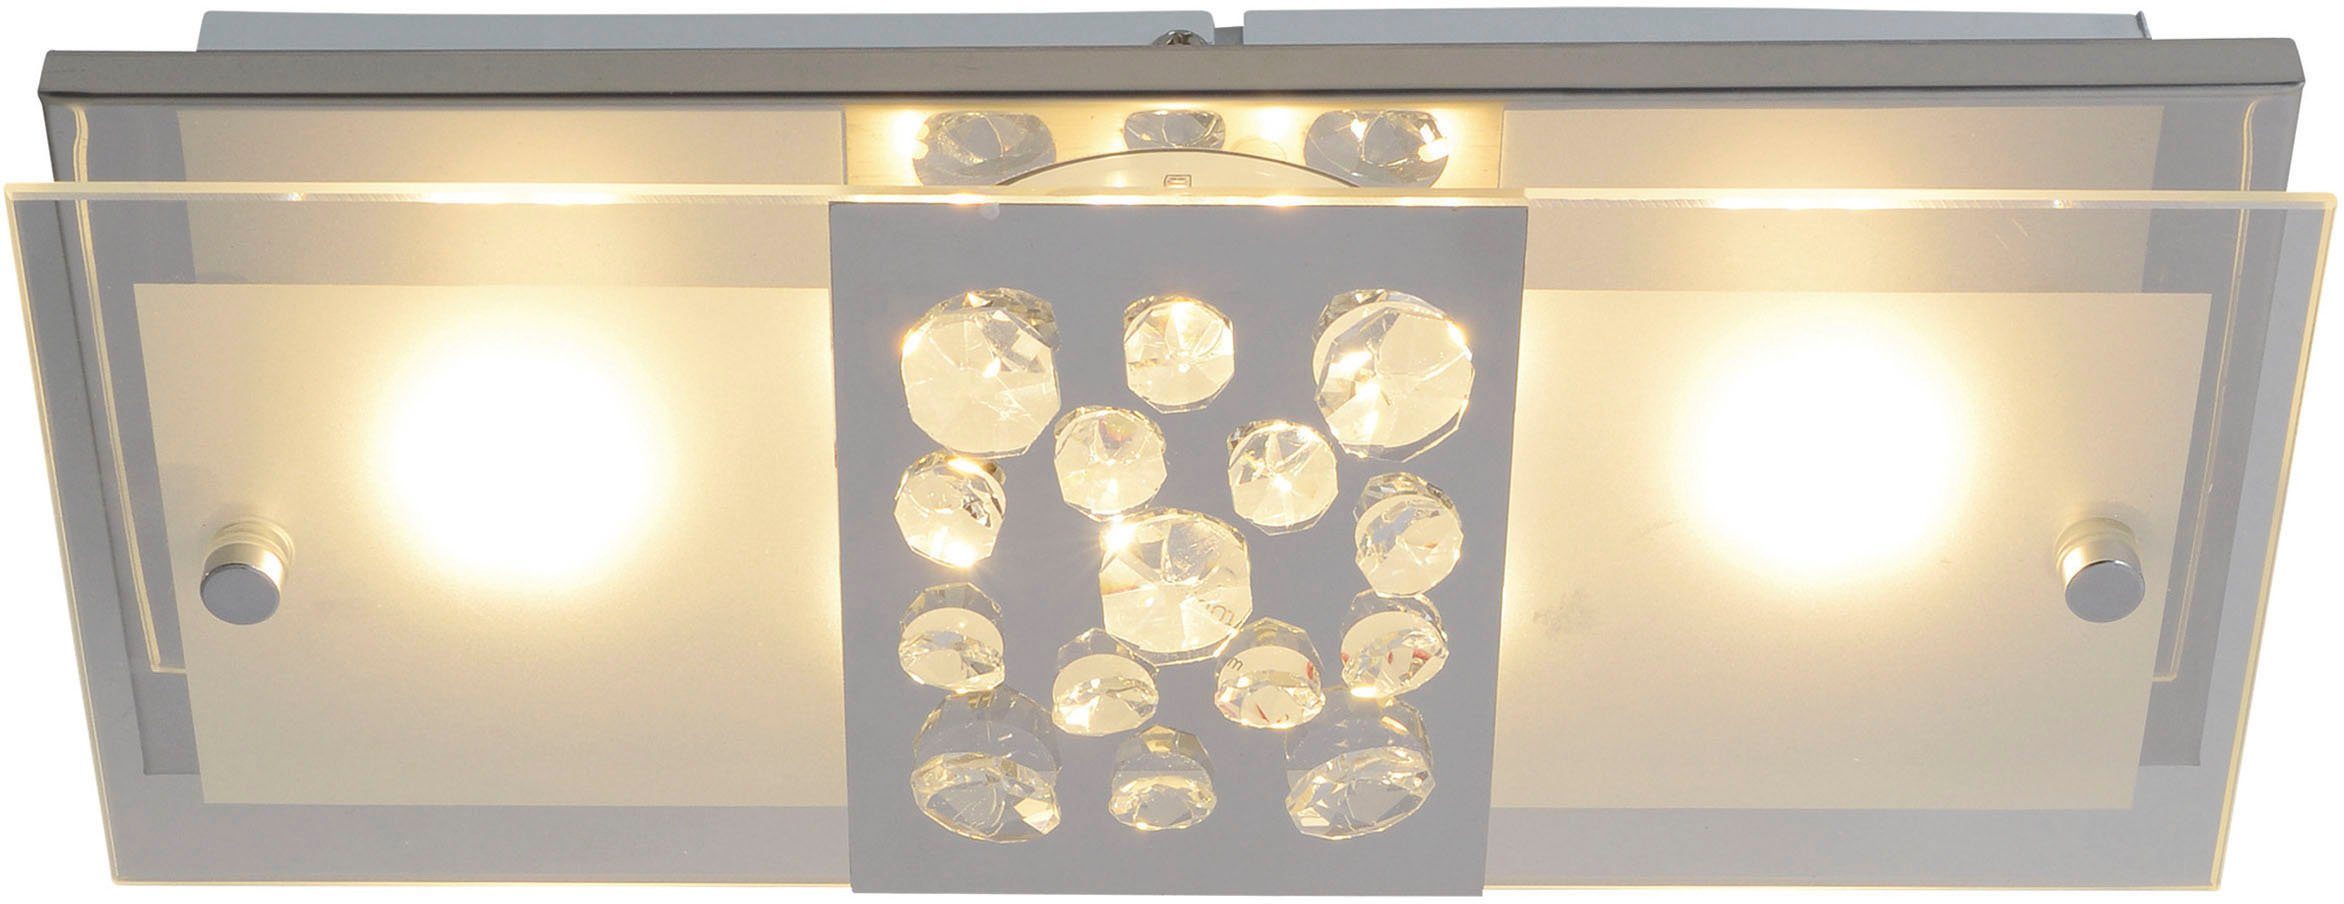 chrom fest 11W Deckenleuchte LED LED total incl. mit integriert, näve Kristallen, teilsatiniert LED Chur, Warmweiß,